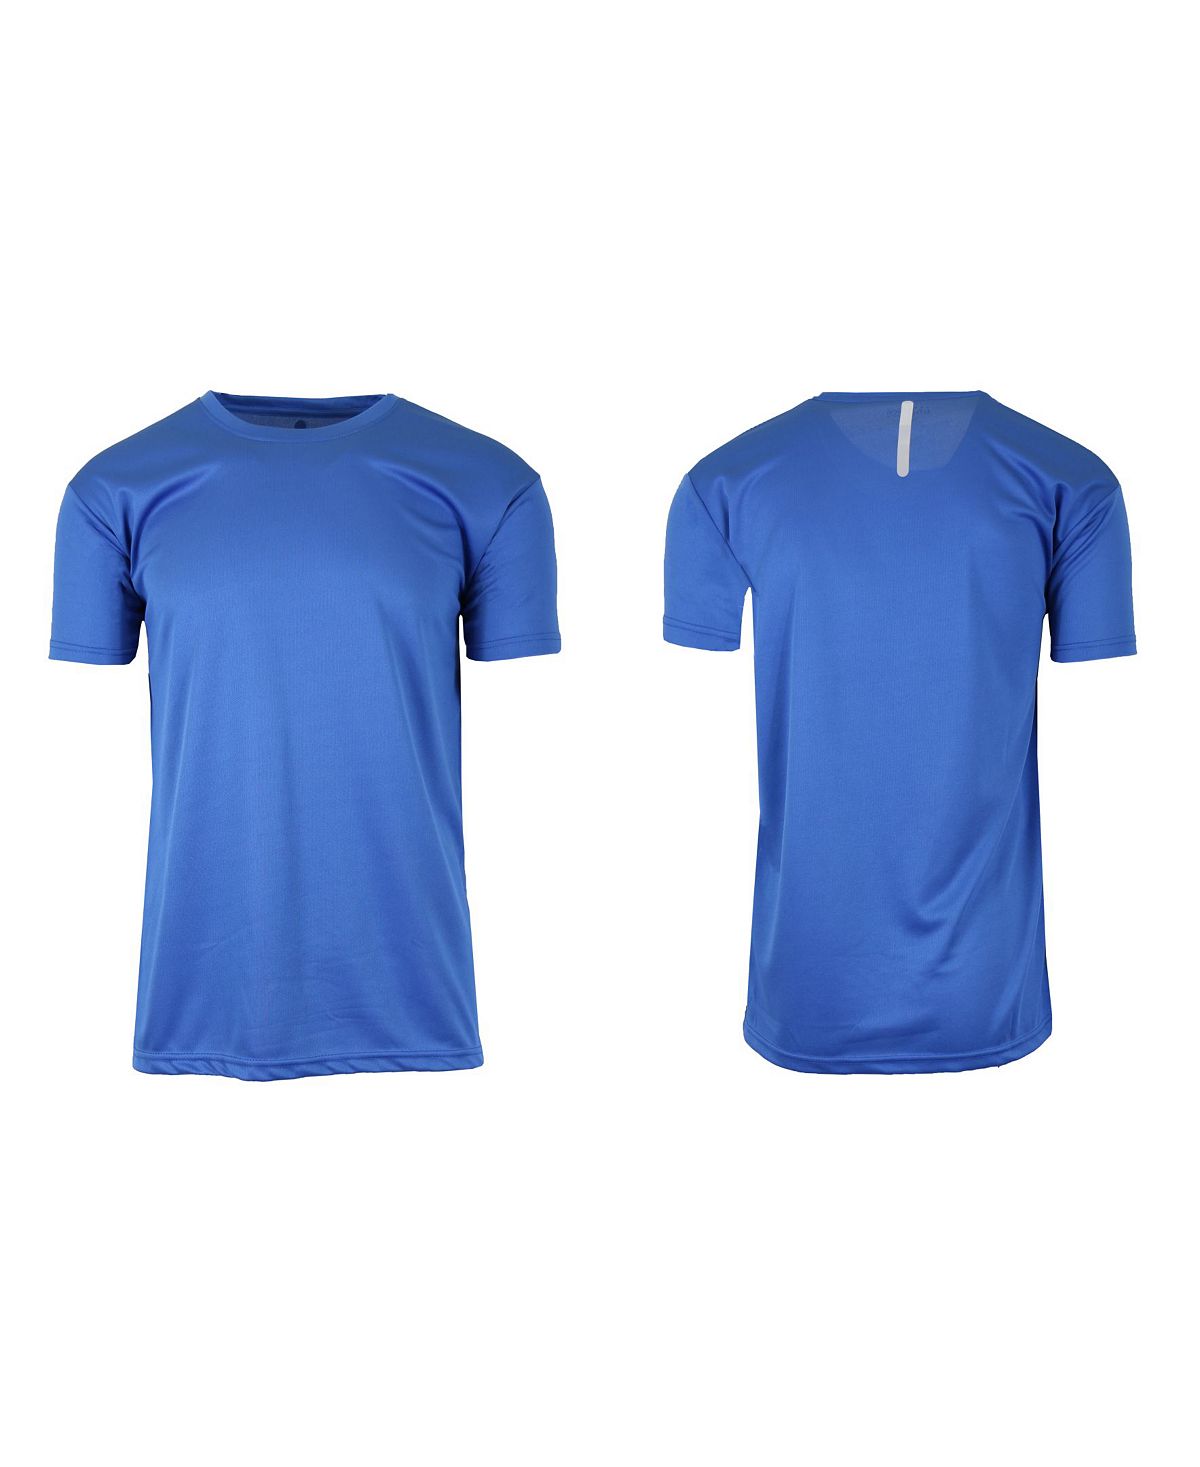 Мужская быстросохнущая влагоотводящая футболка с коротким рукавом Galaxy By Harvic, синий